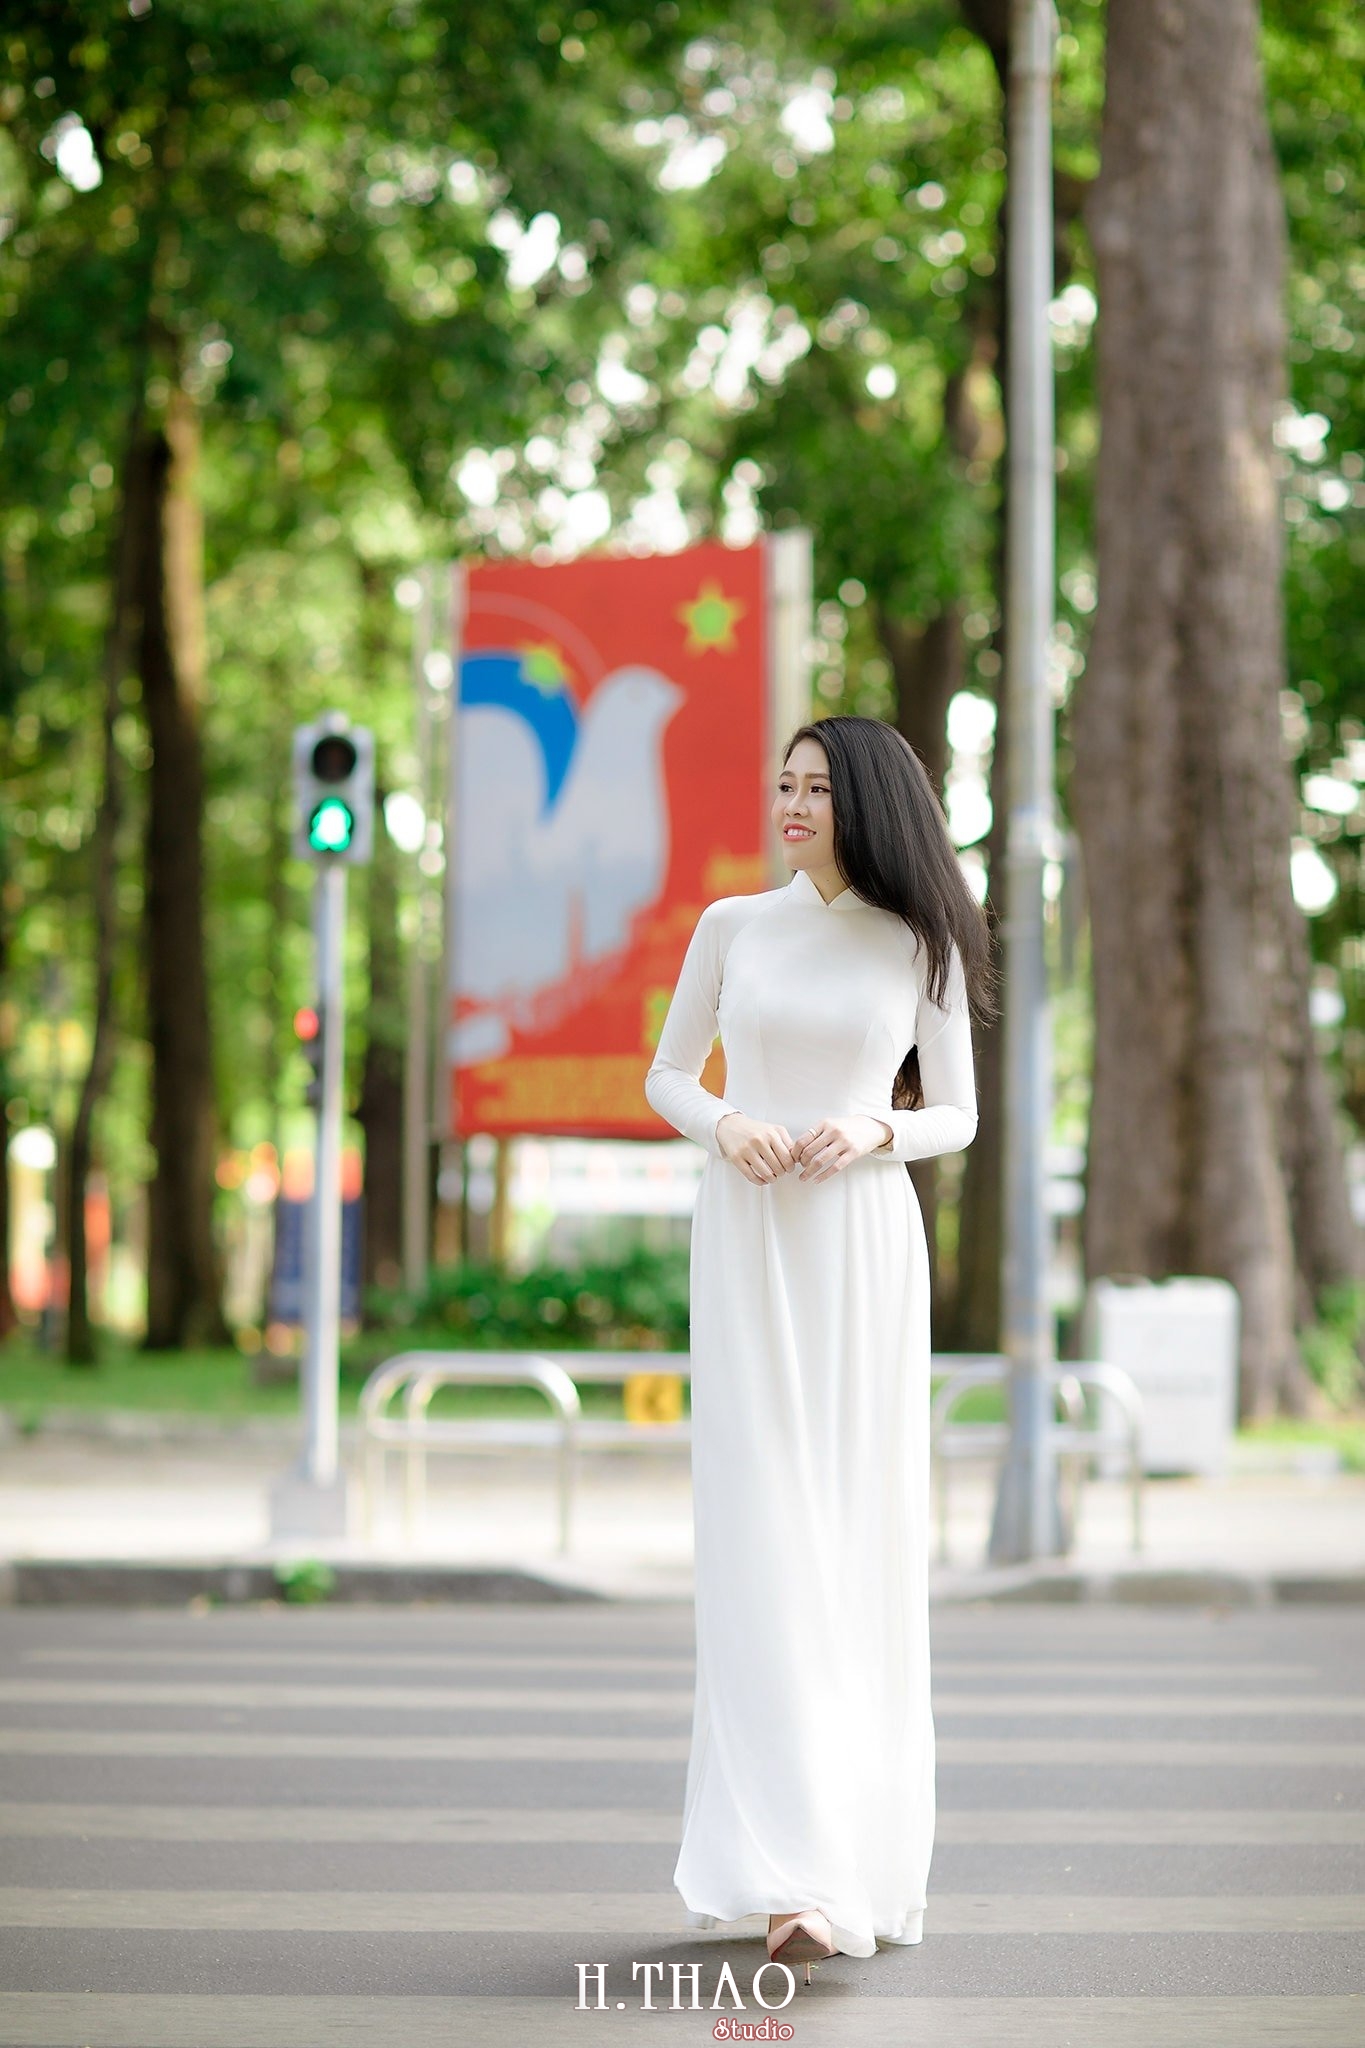 ao dai Misa 5 - 49 cách tạo dáng chụp ảnh với áo dài tuyệt đẹp - HThao Studio